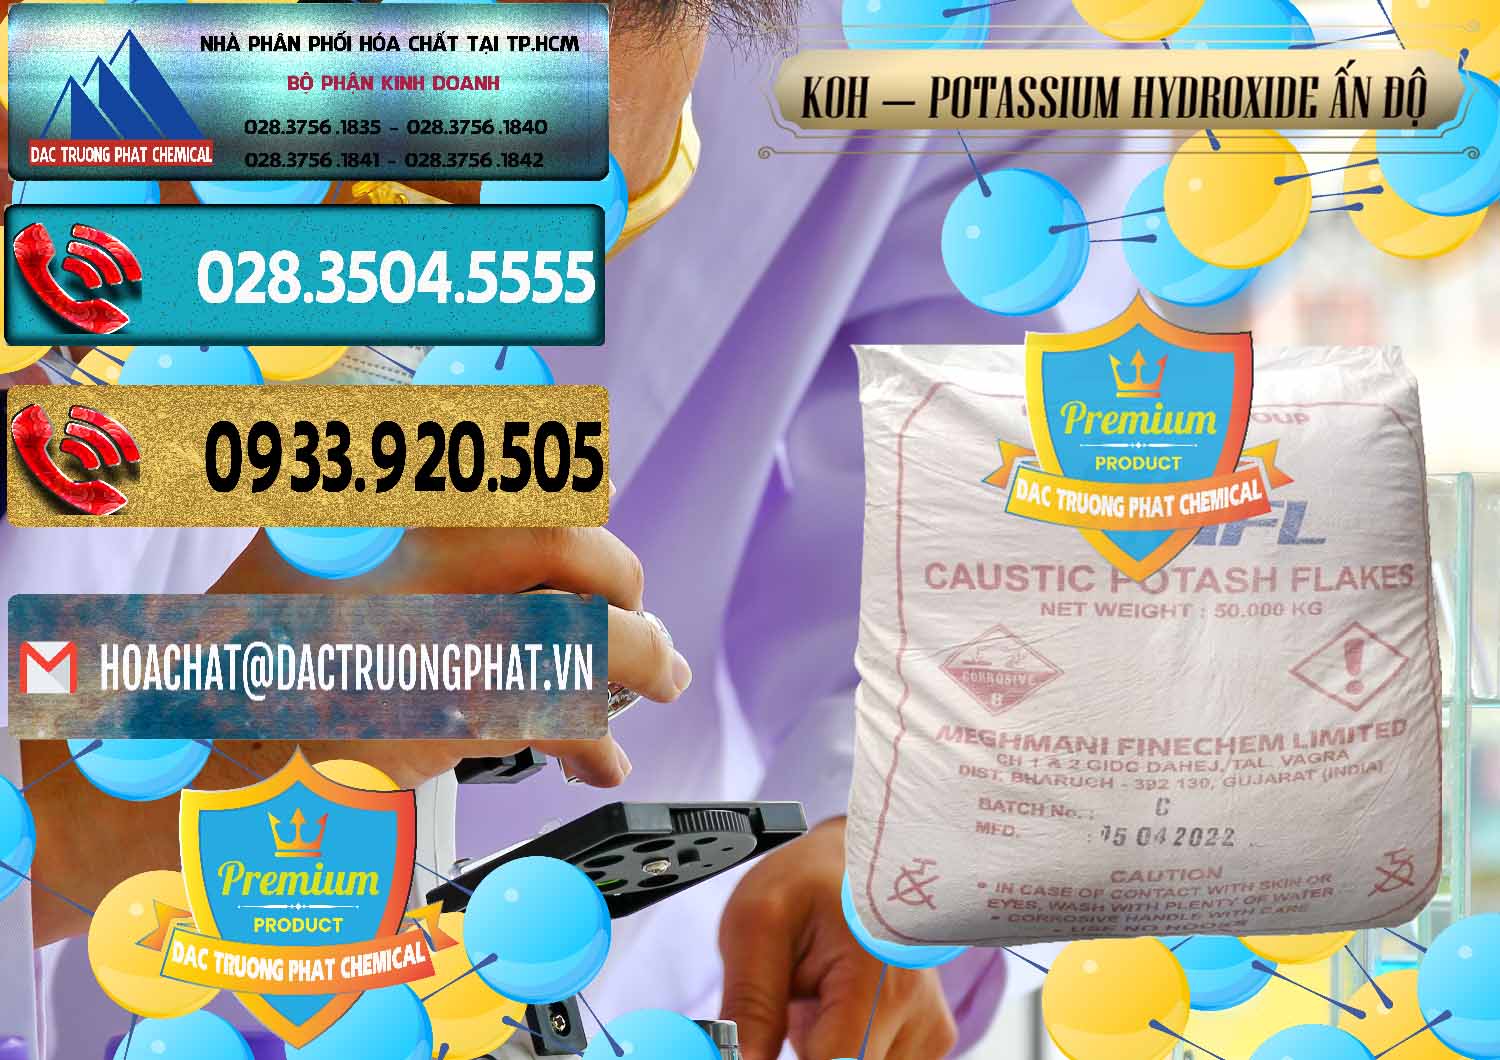 Cty cung ứng & bán KOH ( 90%) – Potassium Hydroxide Ấn Độ India - 0352 - Đơn vị bán và phân phối hóa chất tại TP.HCM - hoachatdetnhuom.com